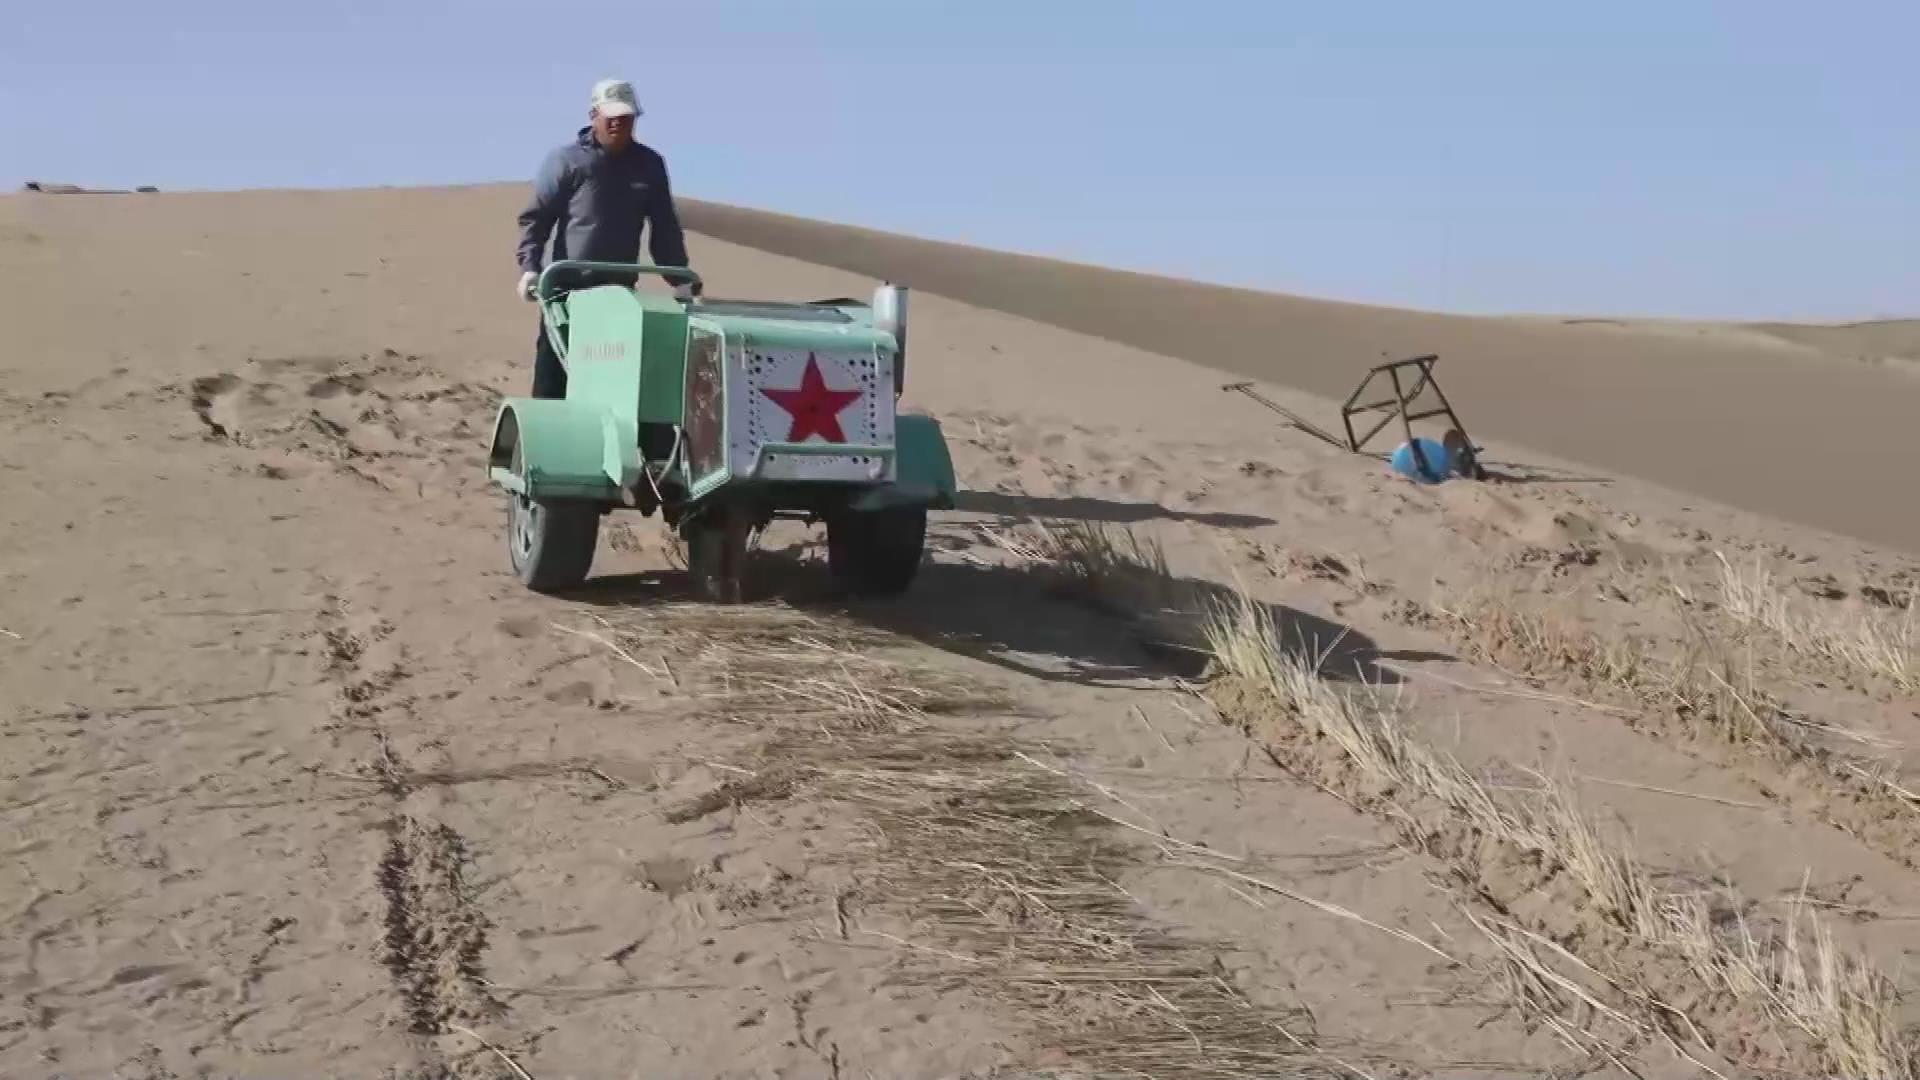 Agricultores chinos utilizan una nueva máquina para controlar el desierto